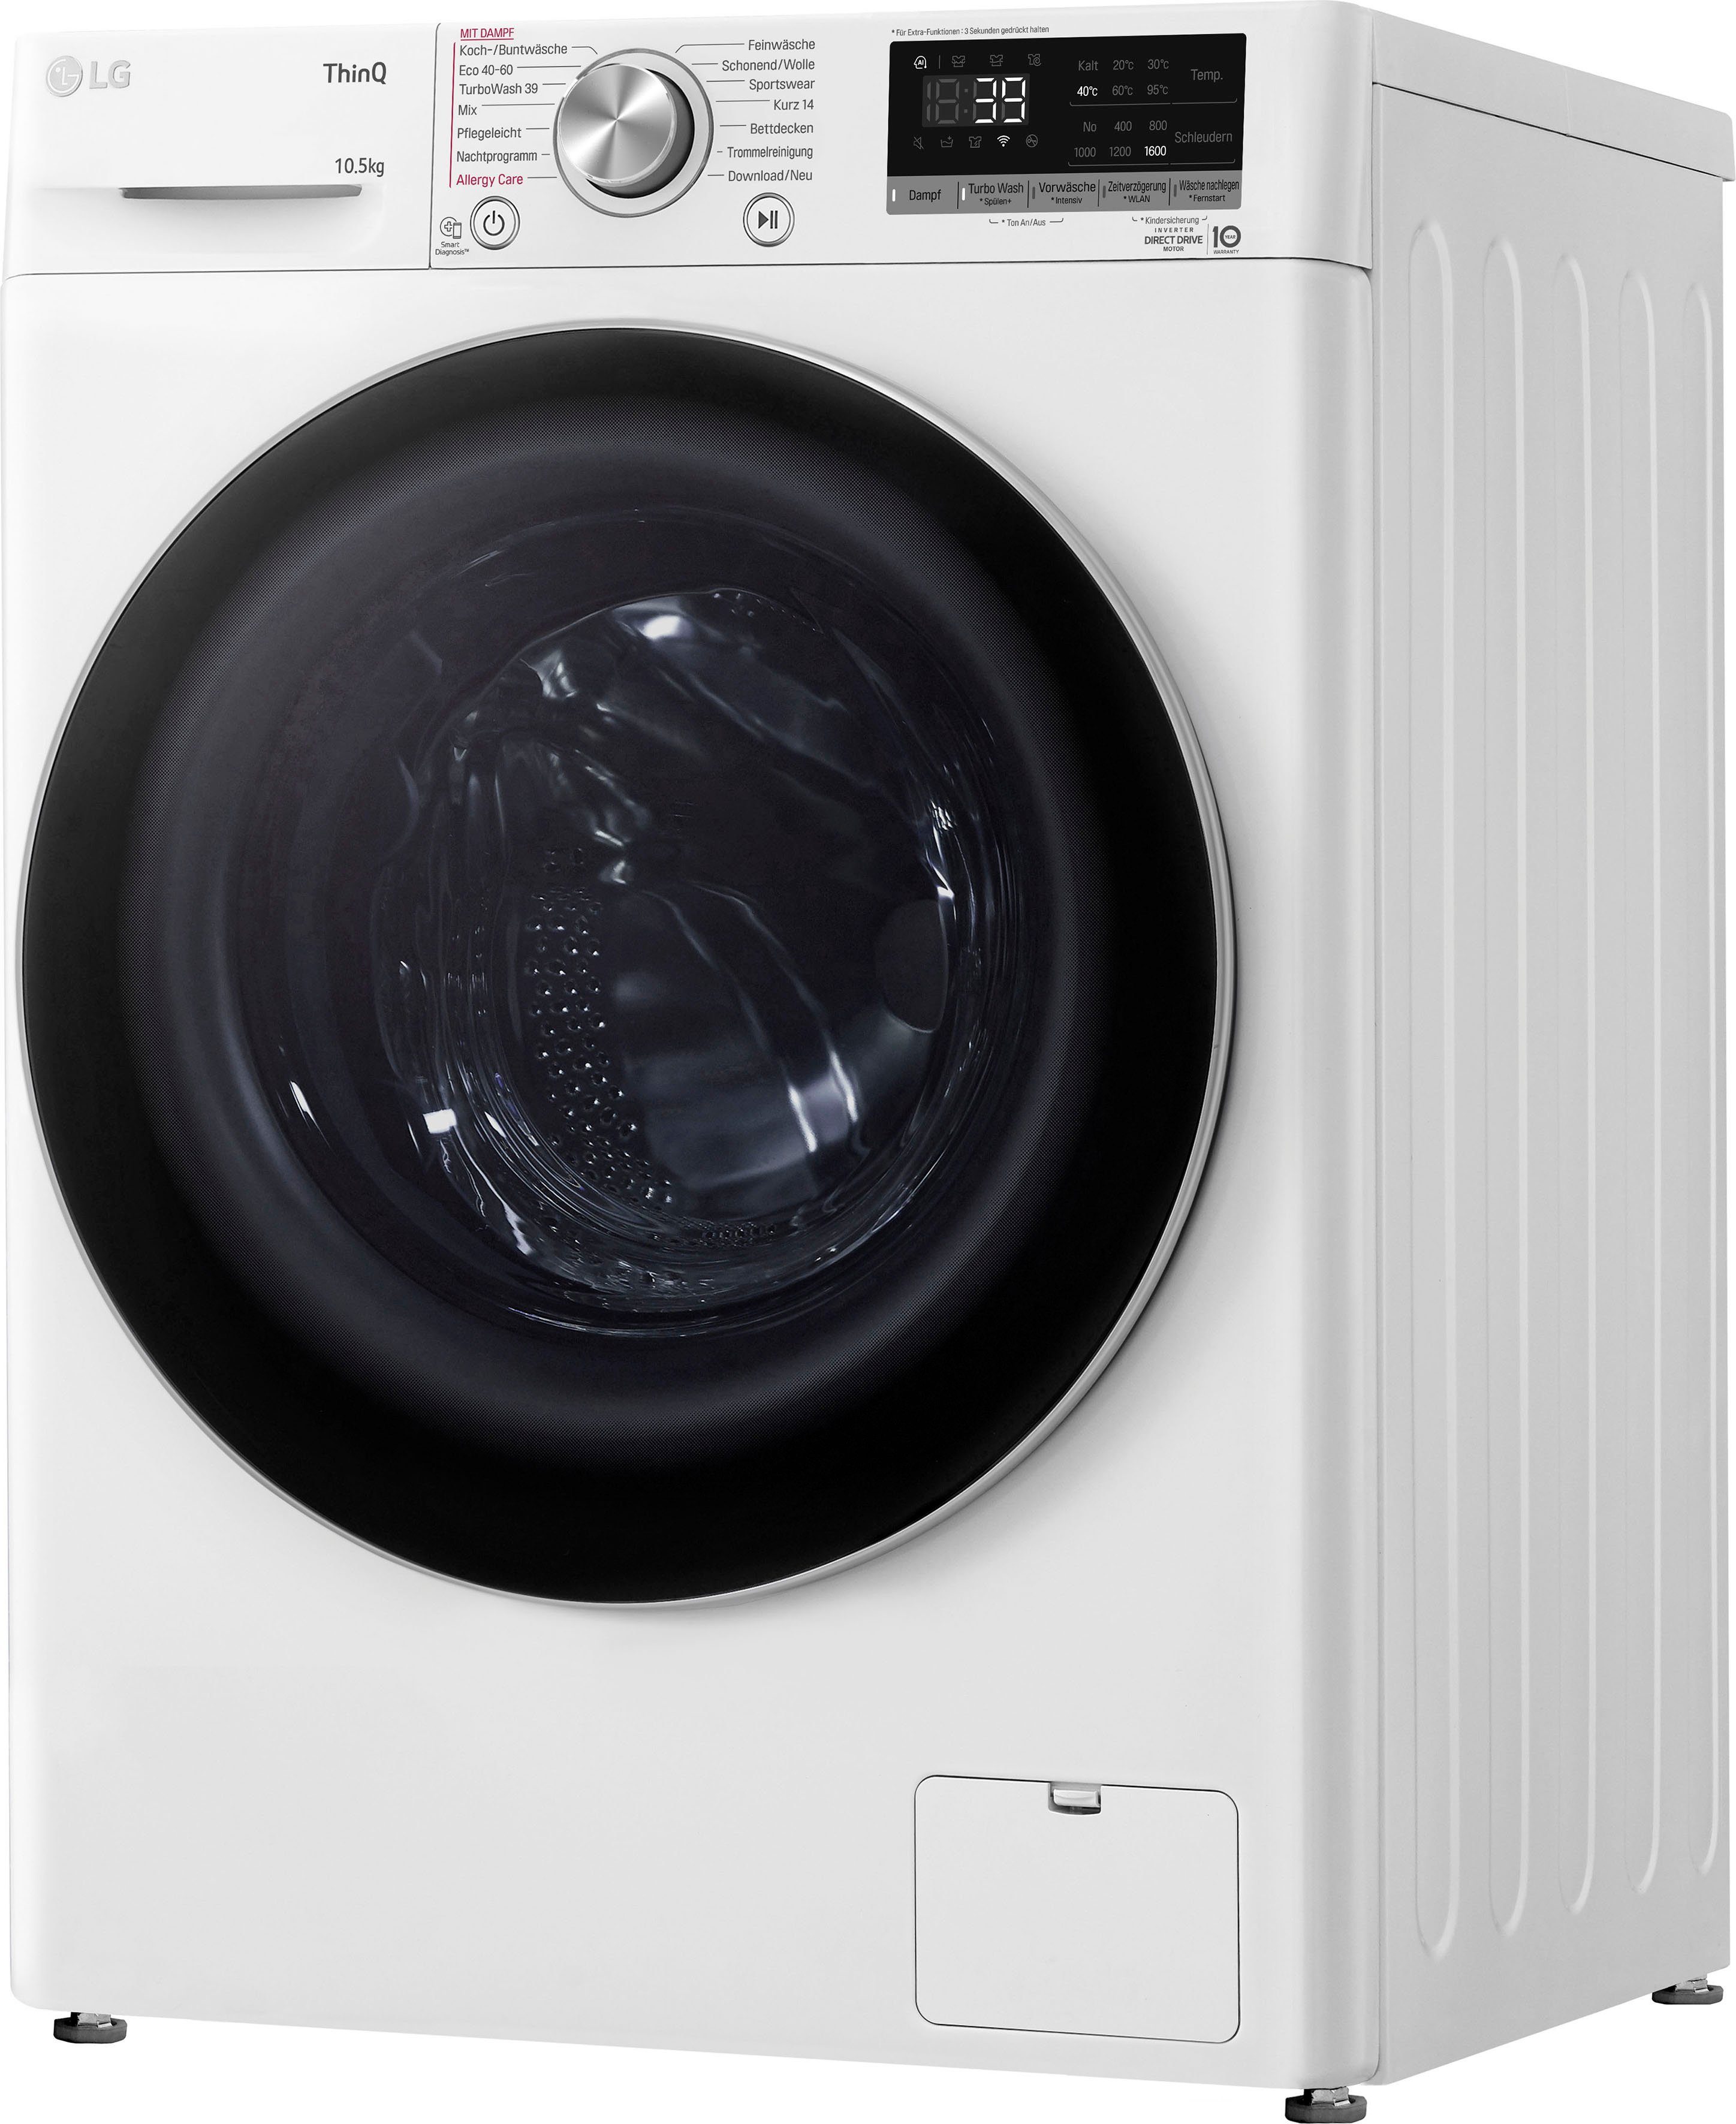 LG Waschmaschine F6WV710P1, 10,5 U/min, 39 in nur kg, - Waschen TurboWash® 1600 Minuten